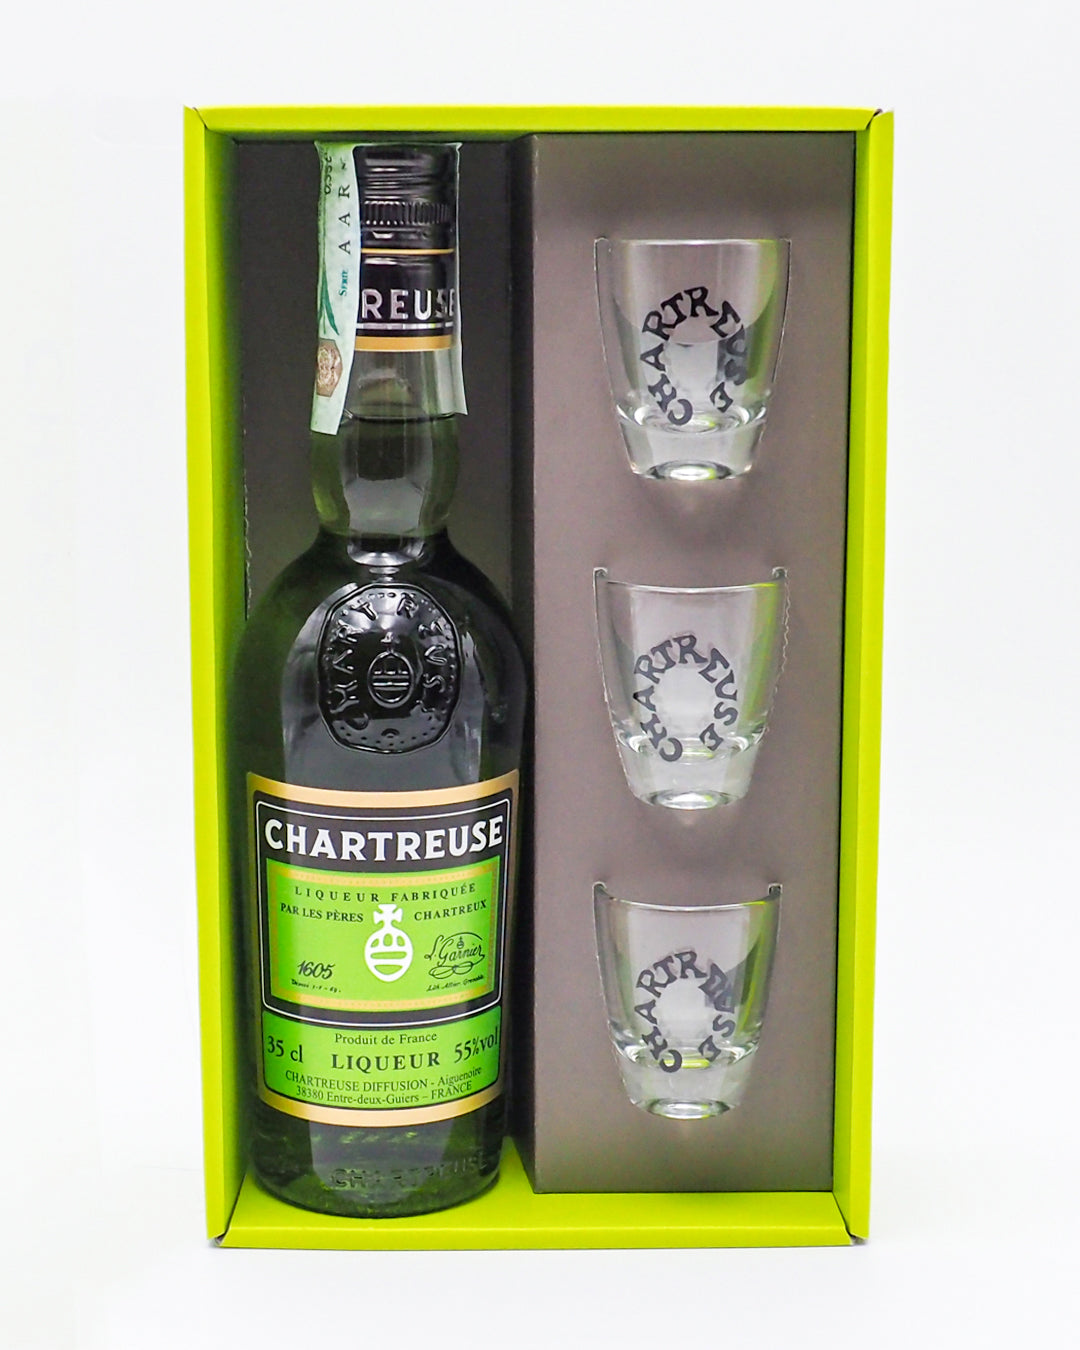 liquore-chartreuse-verte-confezione-regalo-chartreuse-55-0-35l